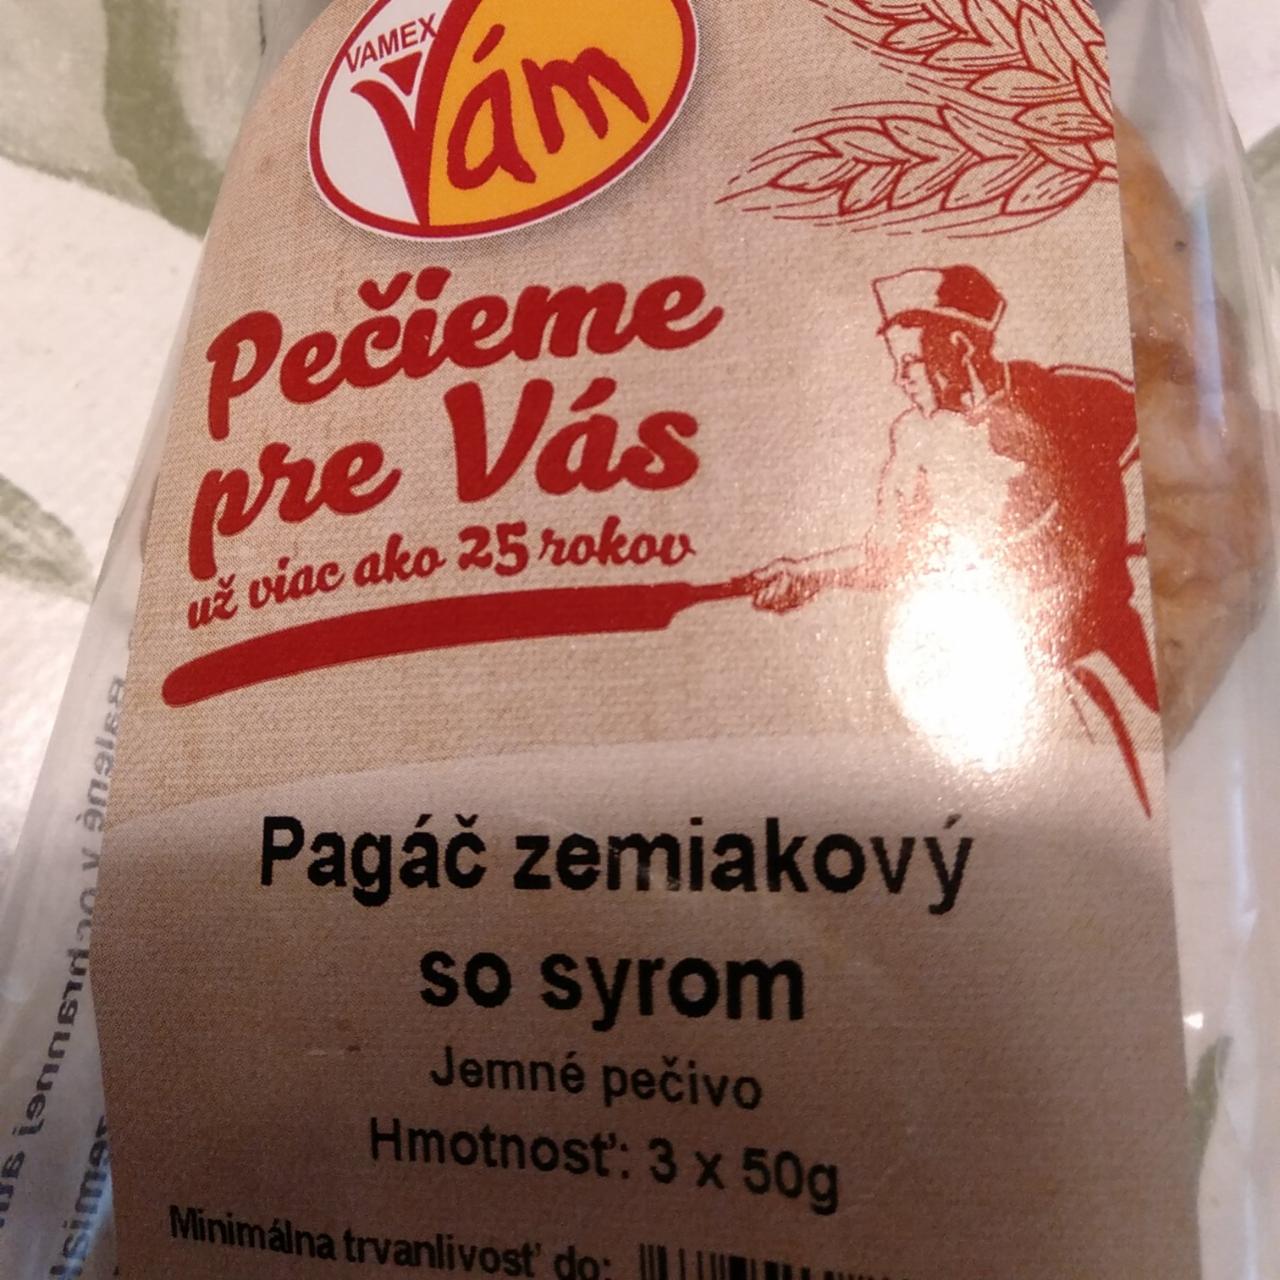 Fotografie - Pagáč zemiakový so syrom Vamex